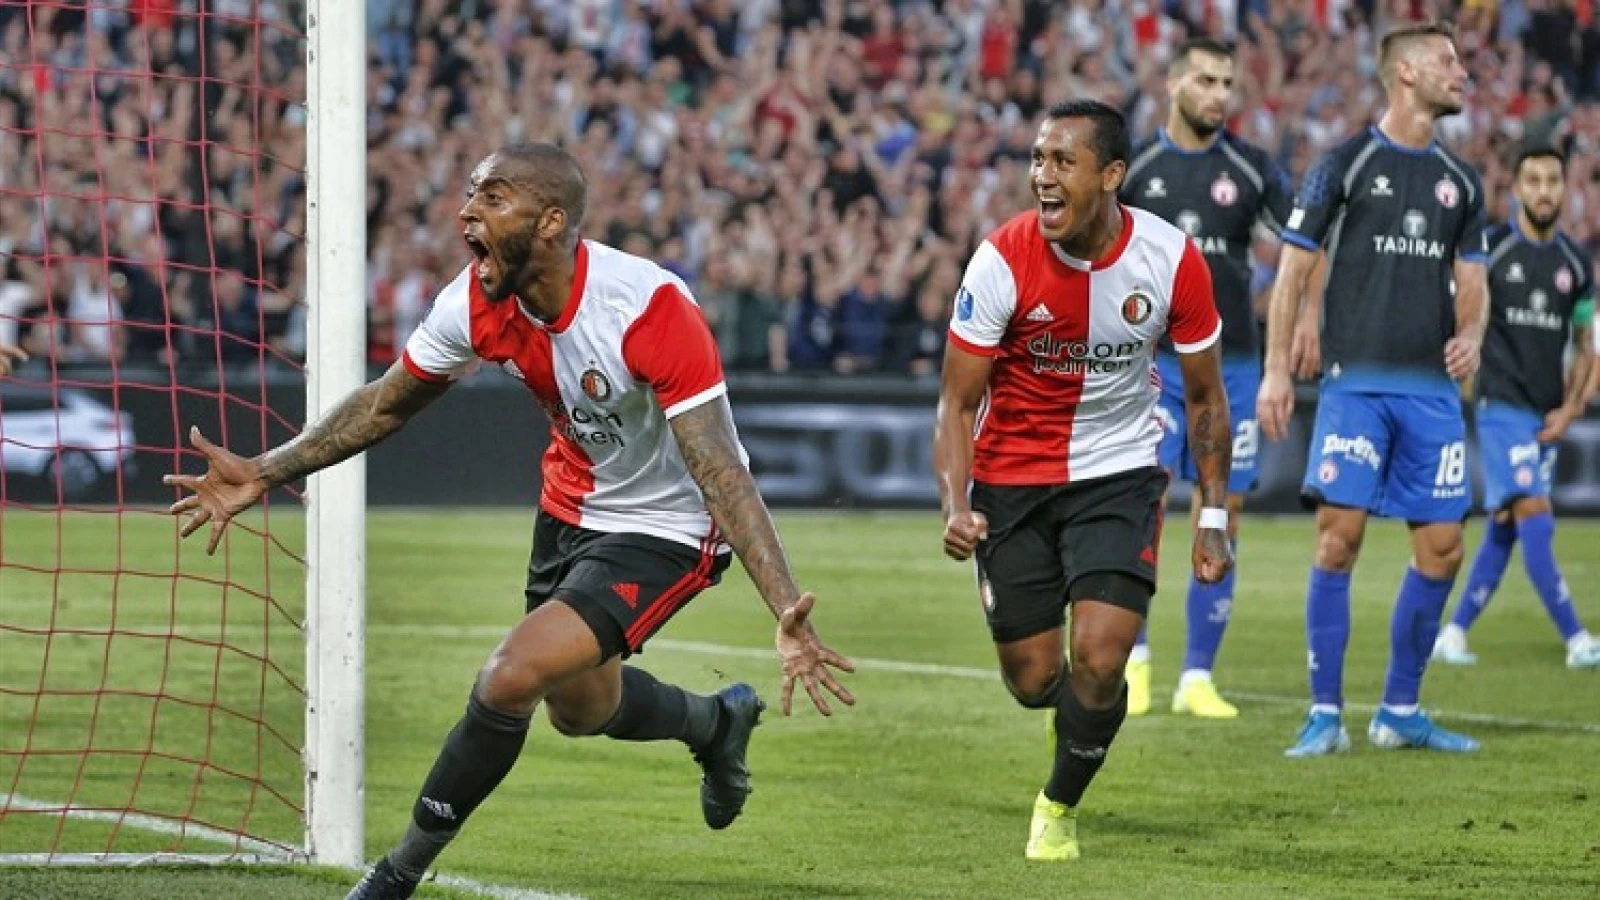 Sterk Feyenoord wint gemakkelijk van Hapoel Beer Sjeva